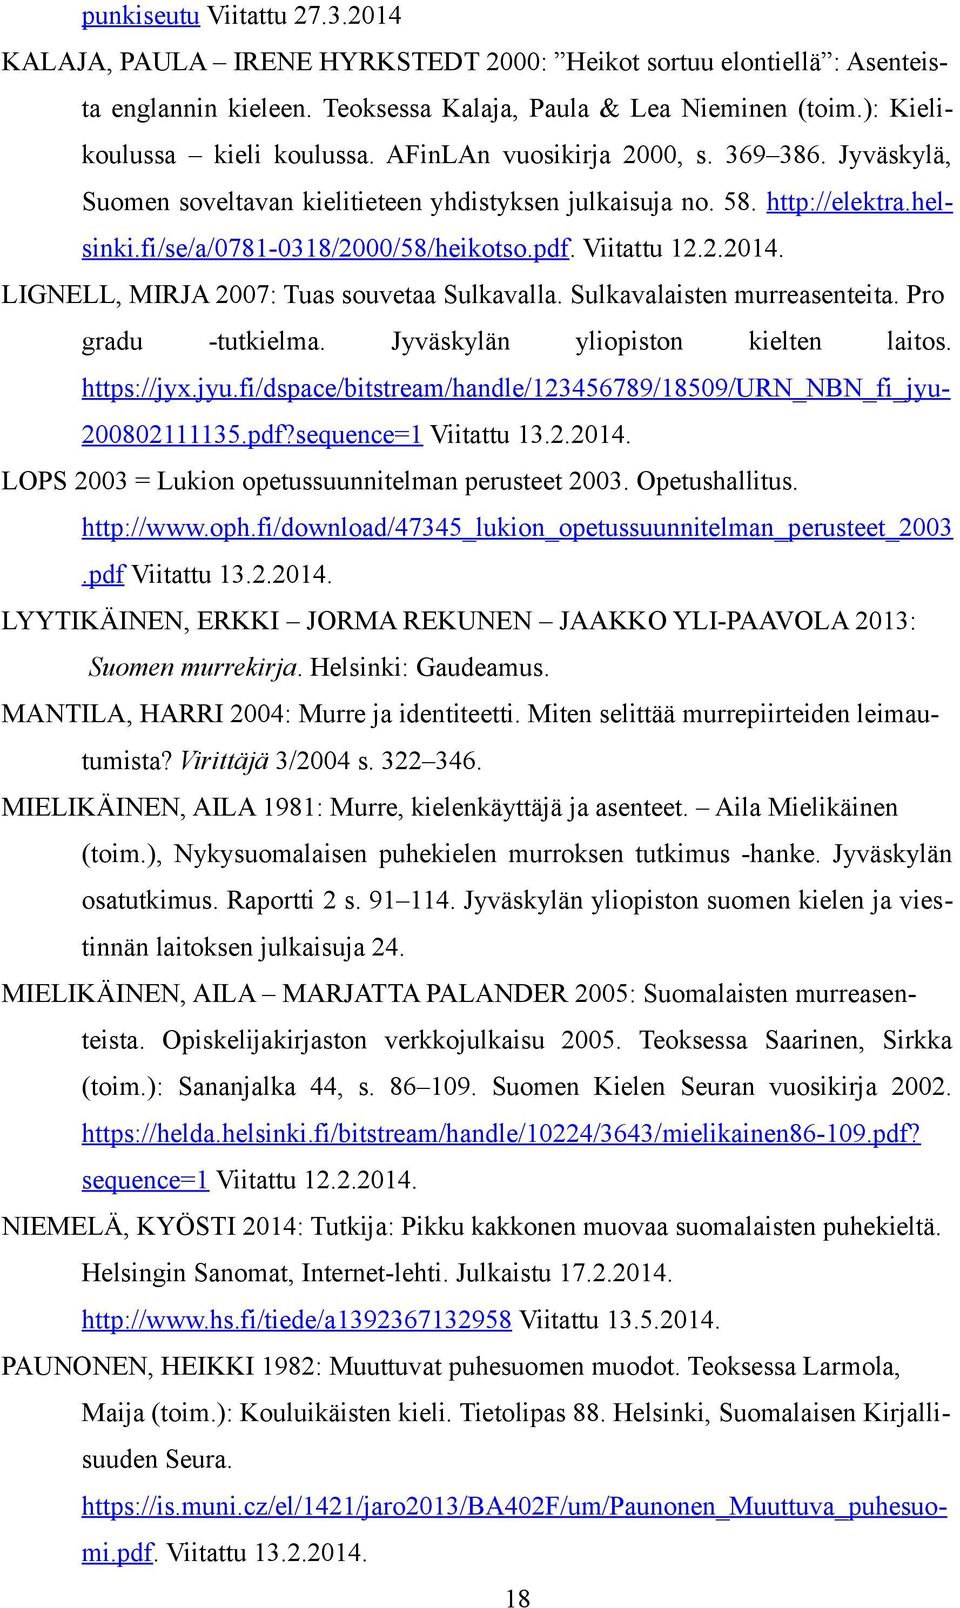 LIGNELL, MIRJA 2007: Tuas souvetaa Sulkavalla. Sulkavalaisten murreasenteita. Pro gradu -tutkielma. Jyväskylän yliopiston kielten laitos. https://jyx.jyu.